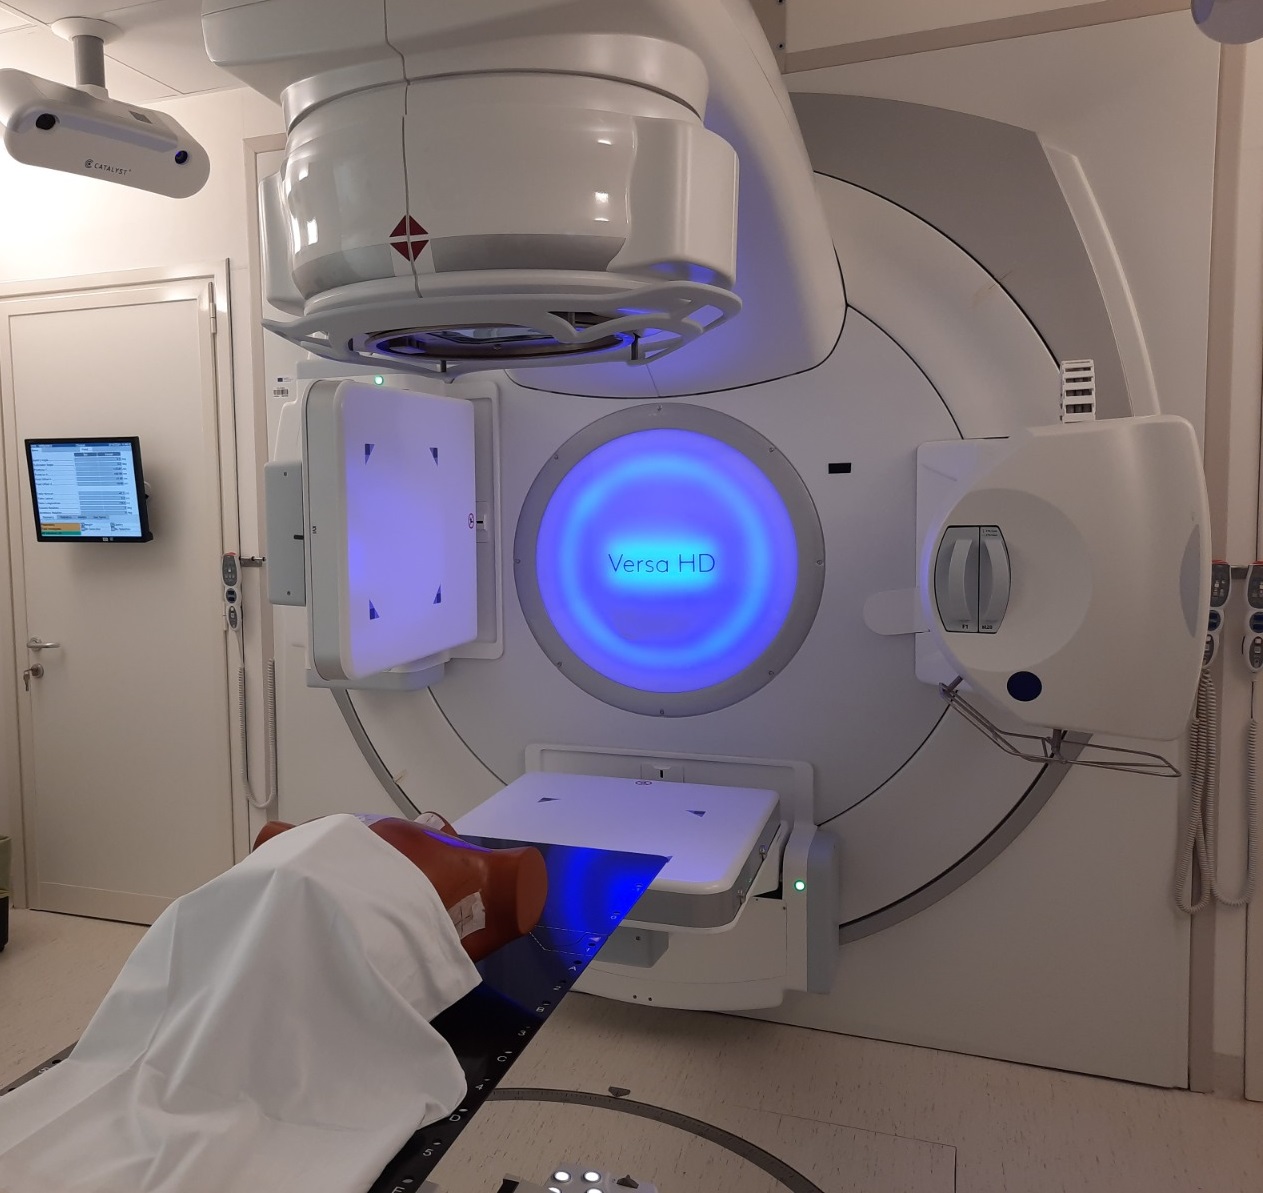 Radioterapia Oncologica: Inaugurato il Nuovo Acceleratore Lineare Finanziato dal PNRR. Sostituisce una Apparecchiatura del 2001 e Offre Maggiore Precisione e Velocità